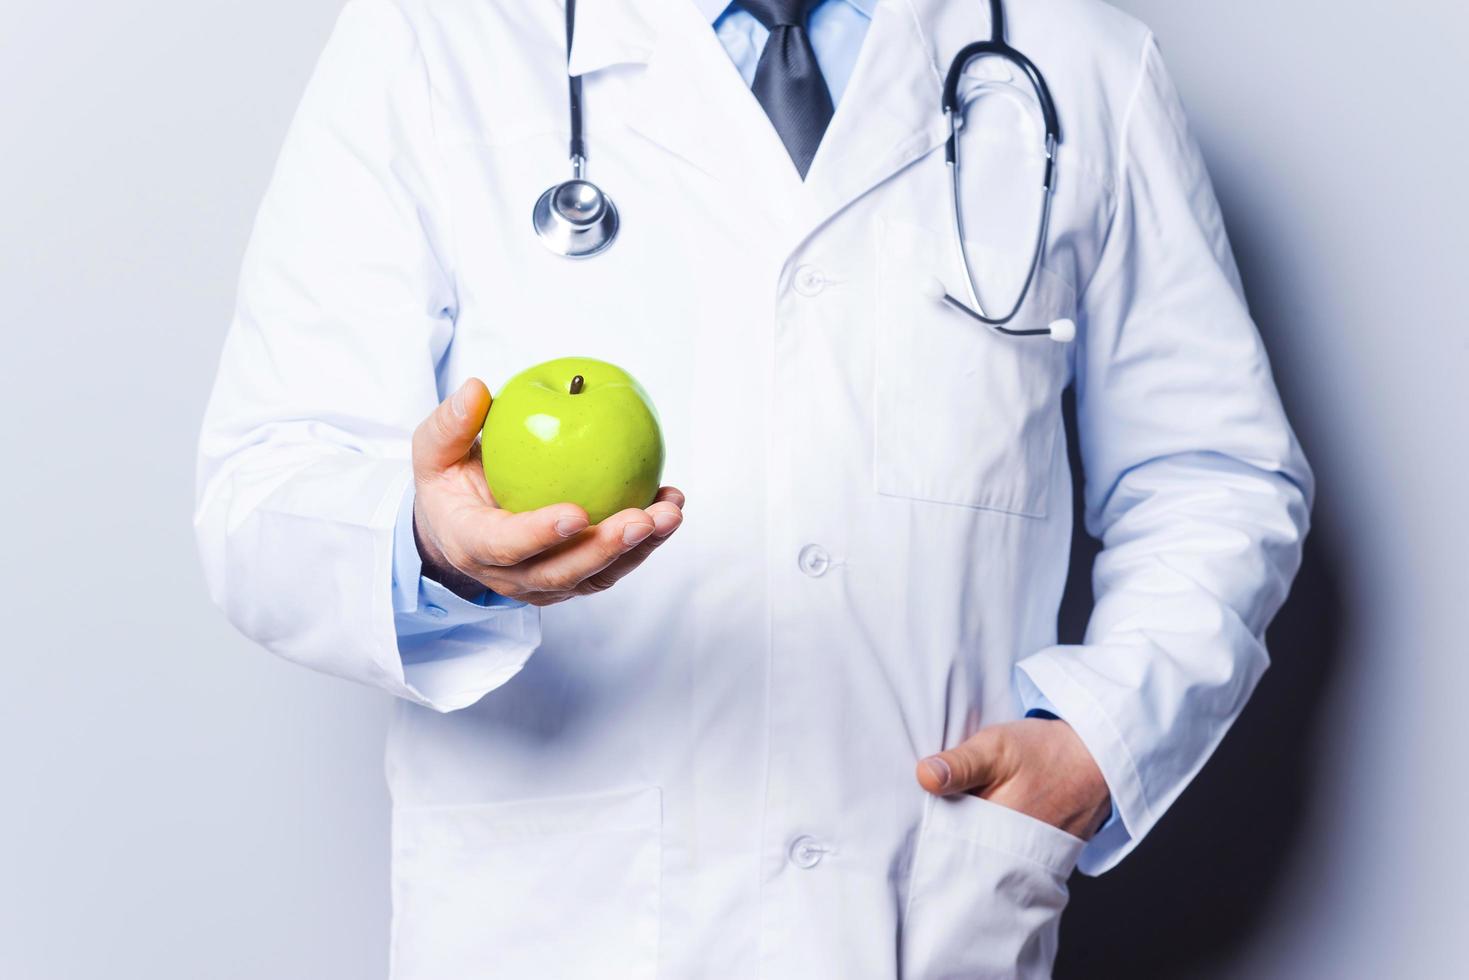 fruit maken u gezond. detailopname van dokter Holding groen appel terwijl staand tegen grijs achtergrond foto